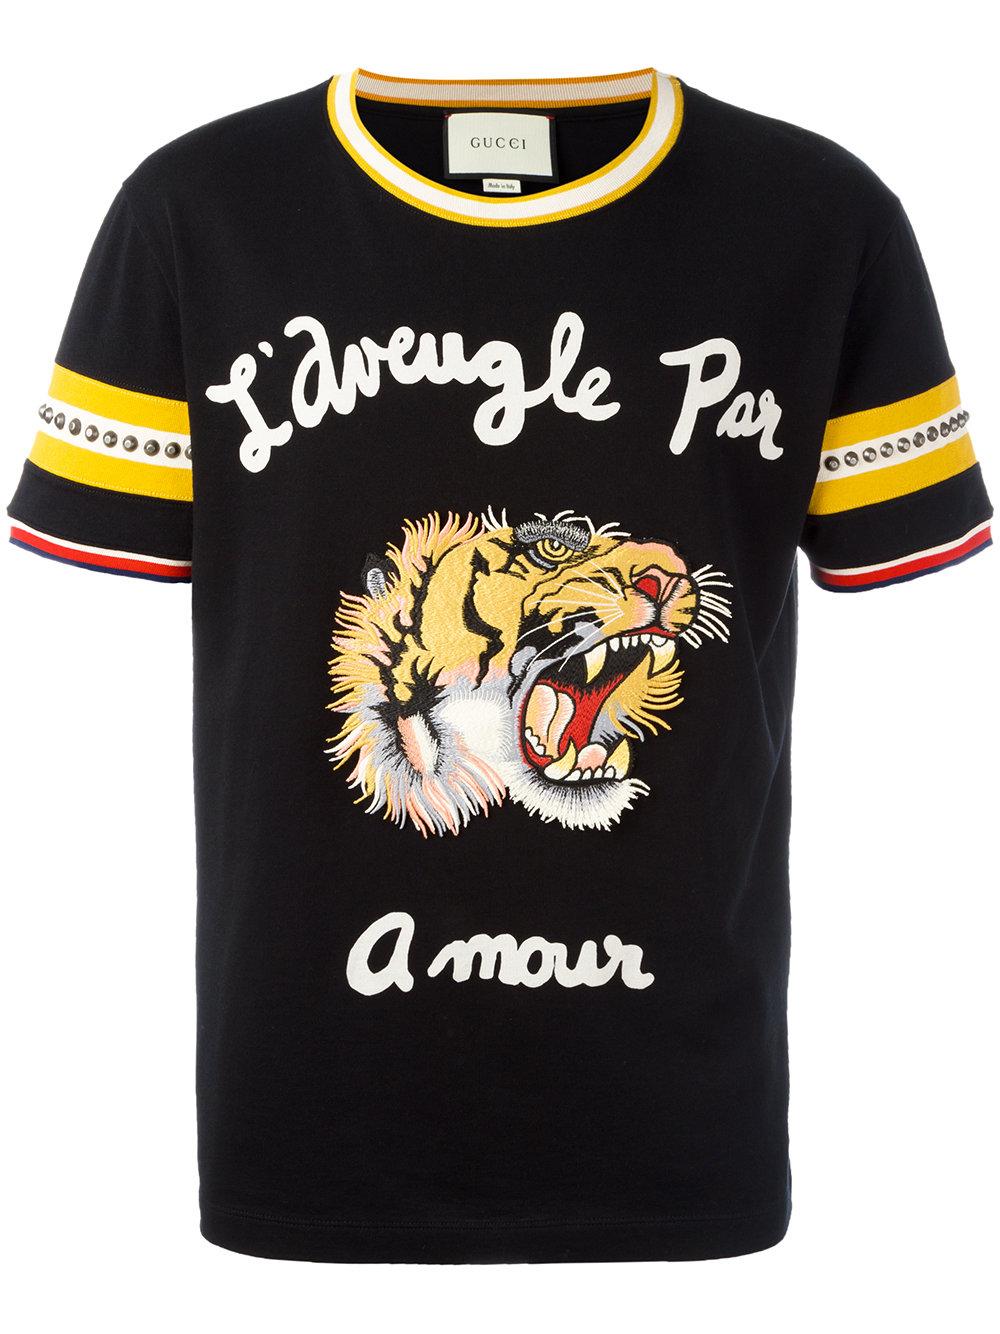 Gucci - L'aveugle Par Amour T-shirt - Men - Cotton/brass/polyester - S ...